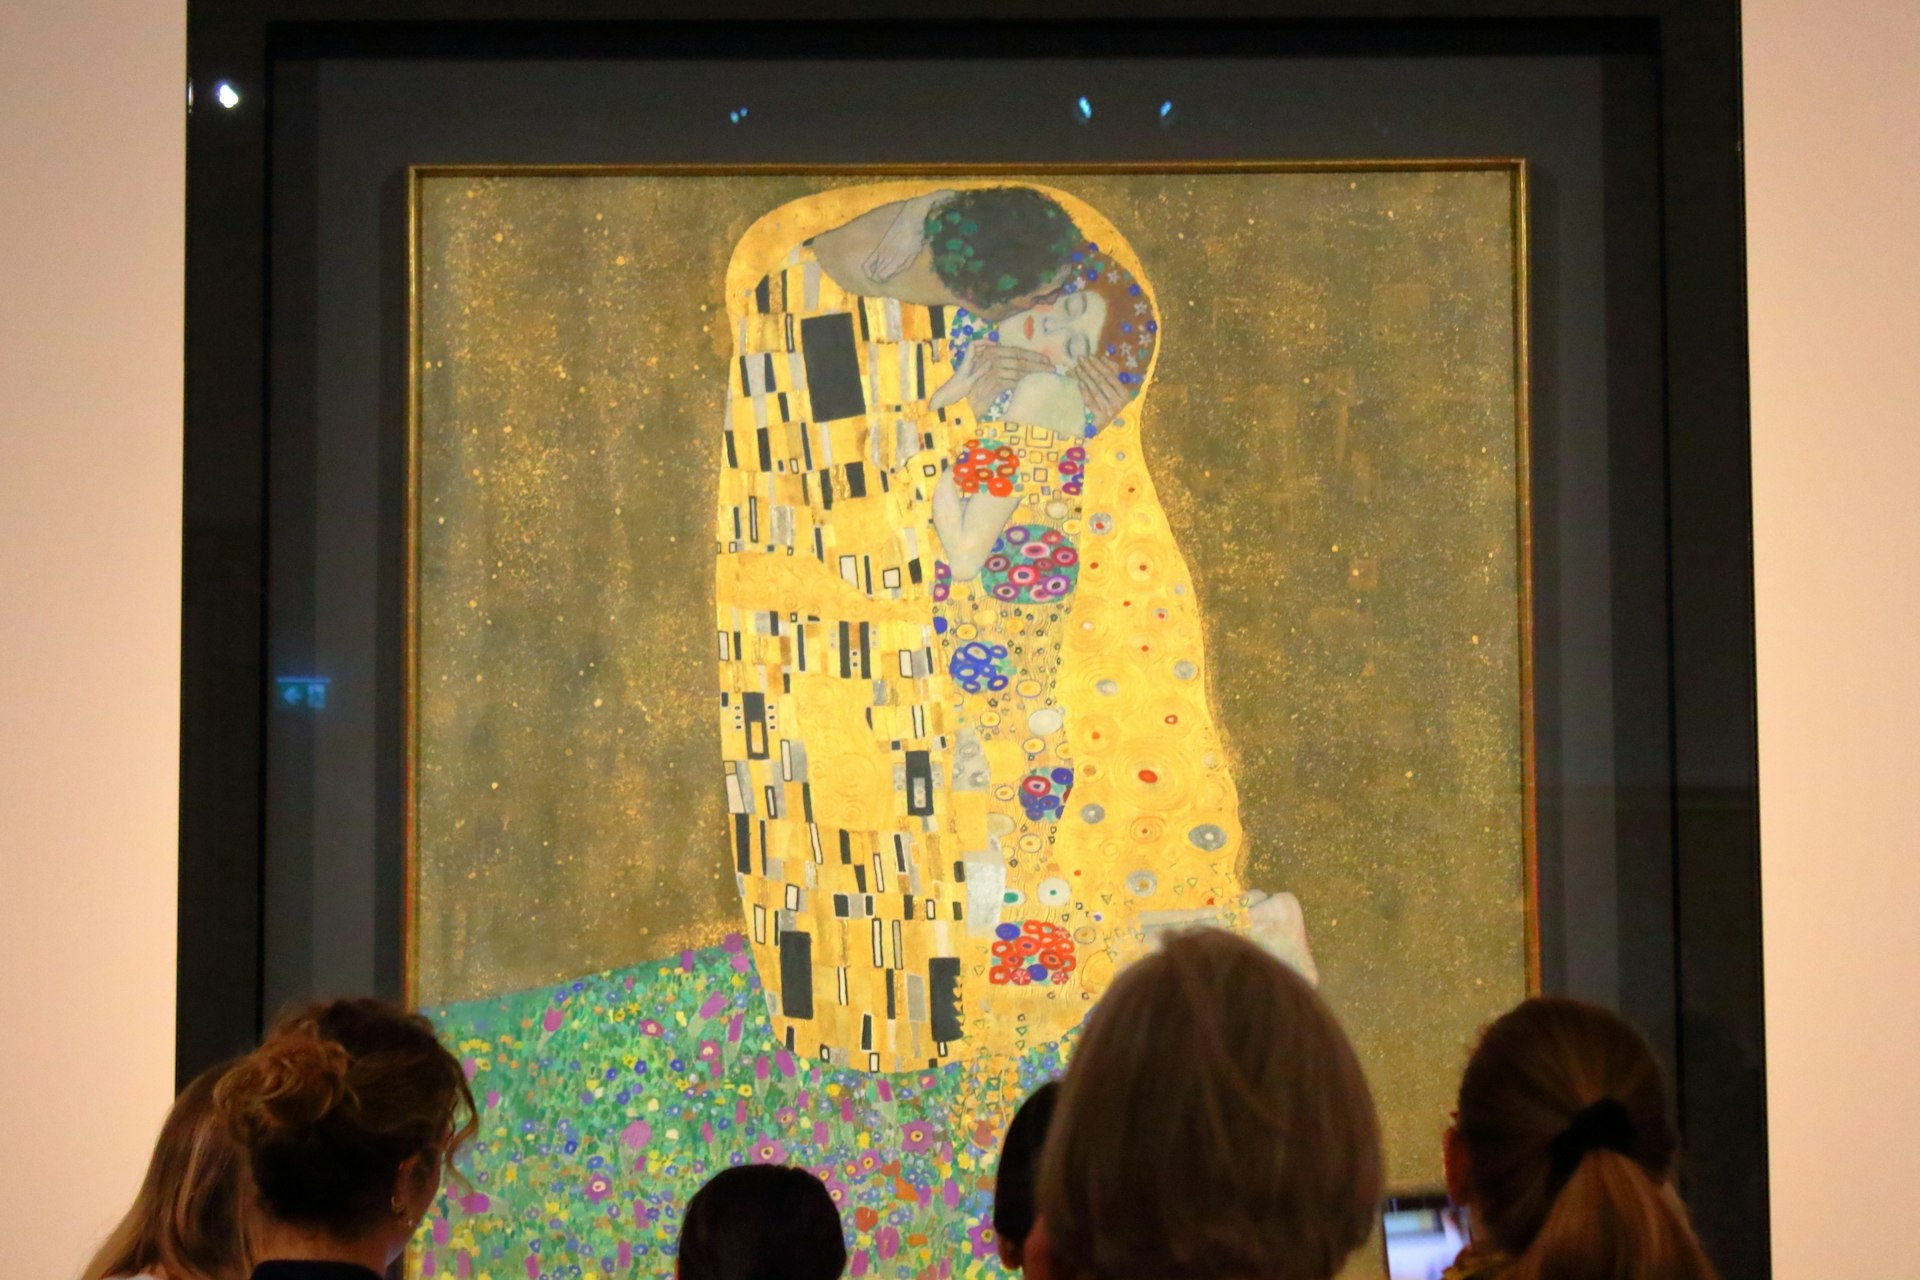 ”The Kiss” by Gustav Klimt at the Belvedere Museum, Vienna, Austria